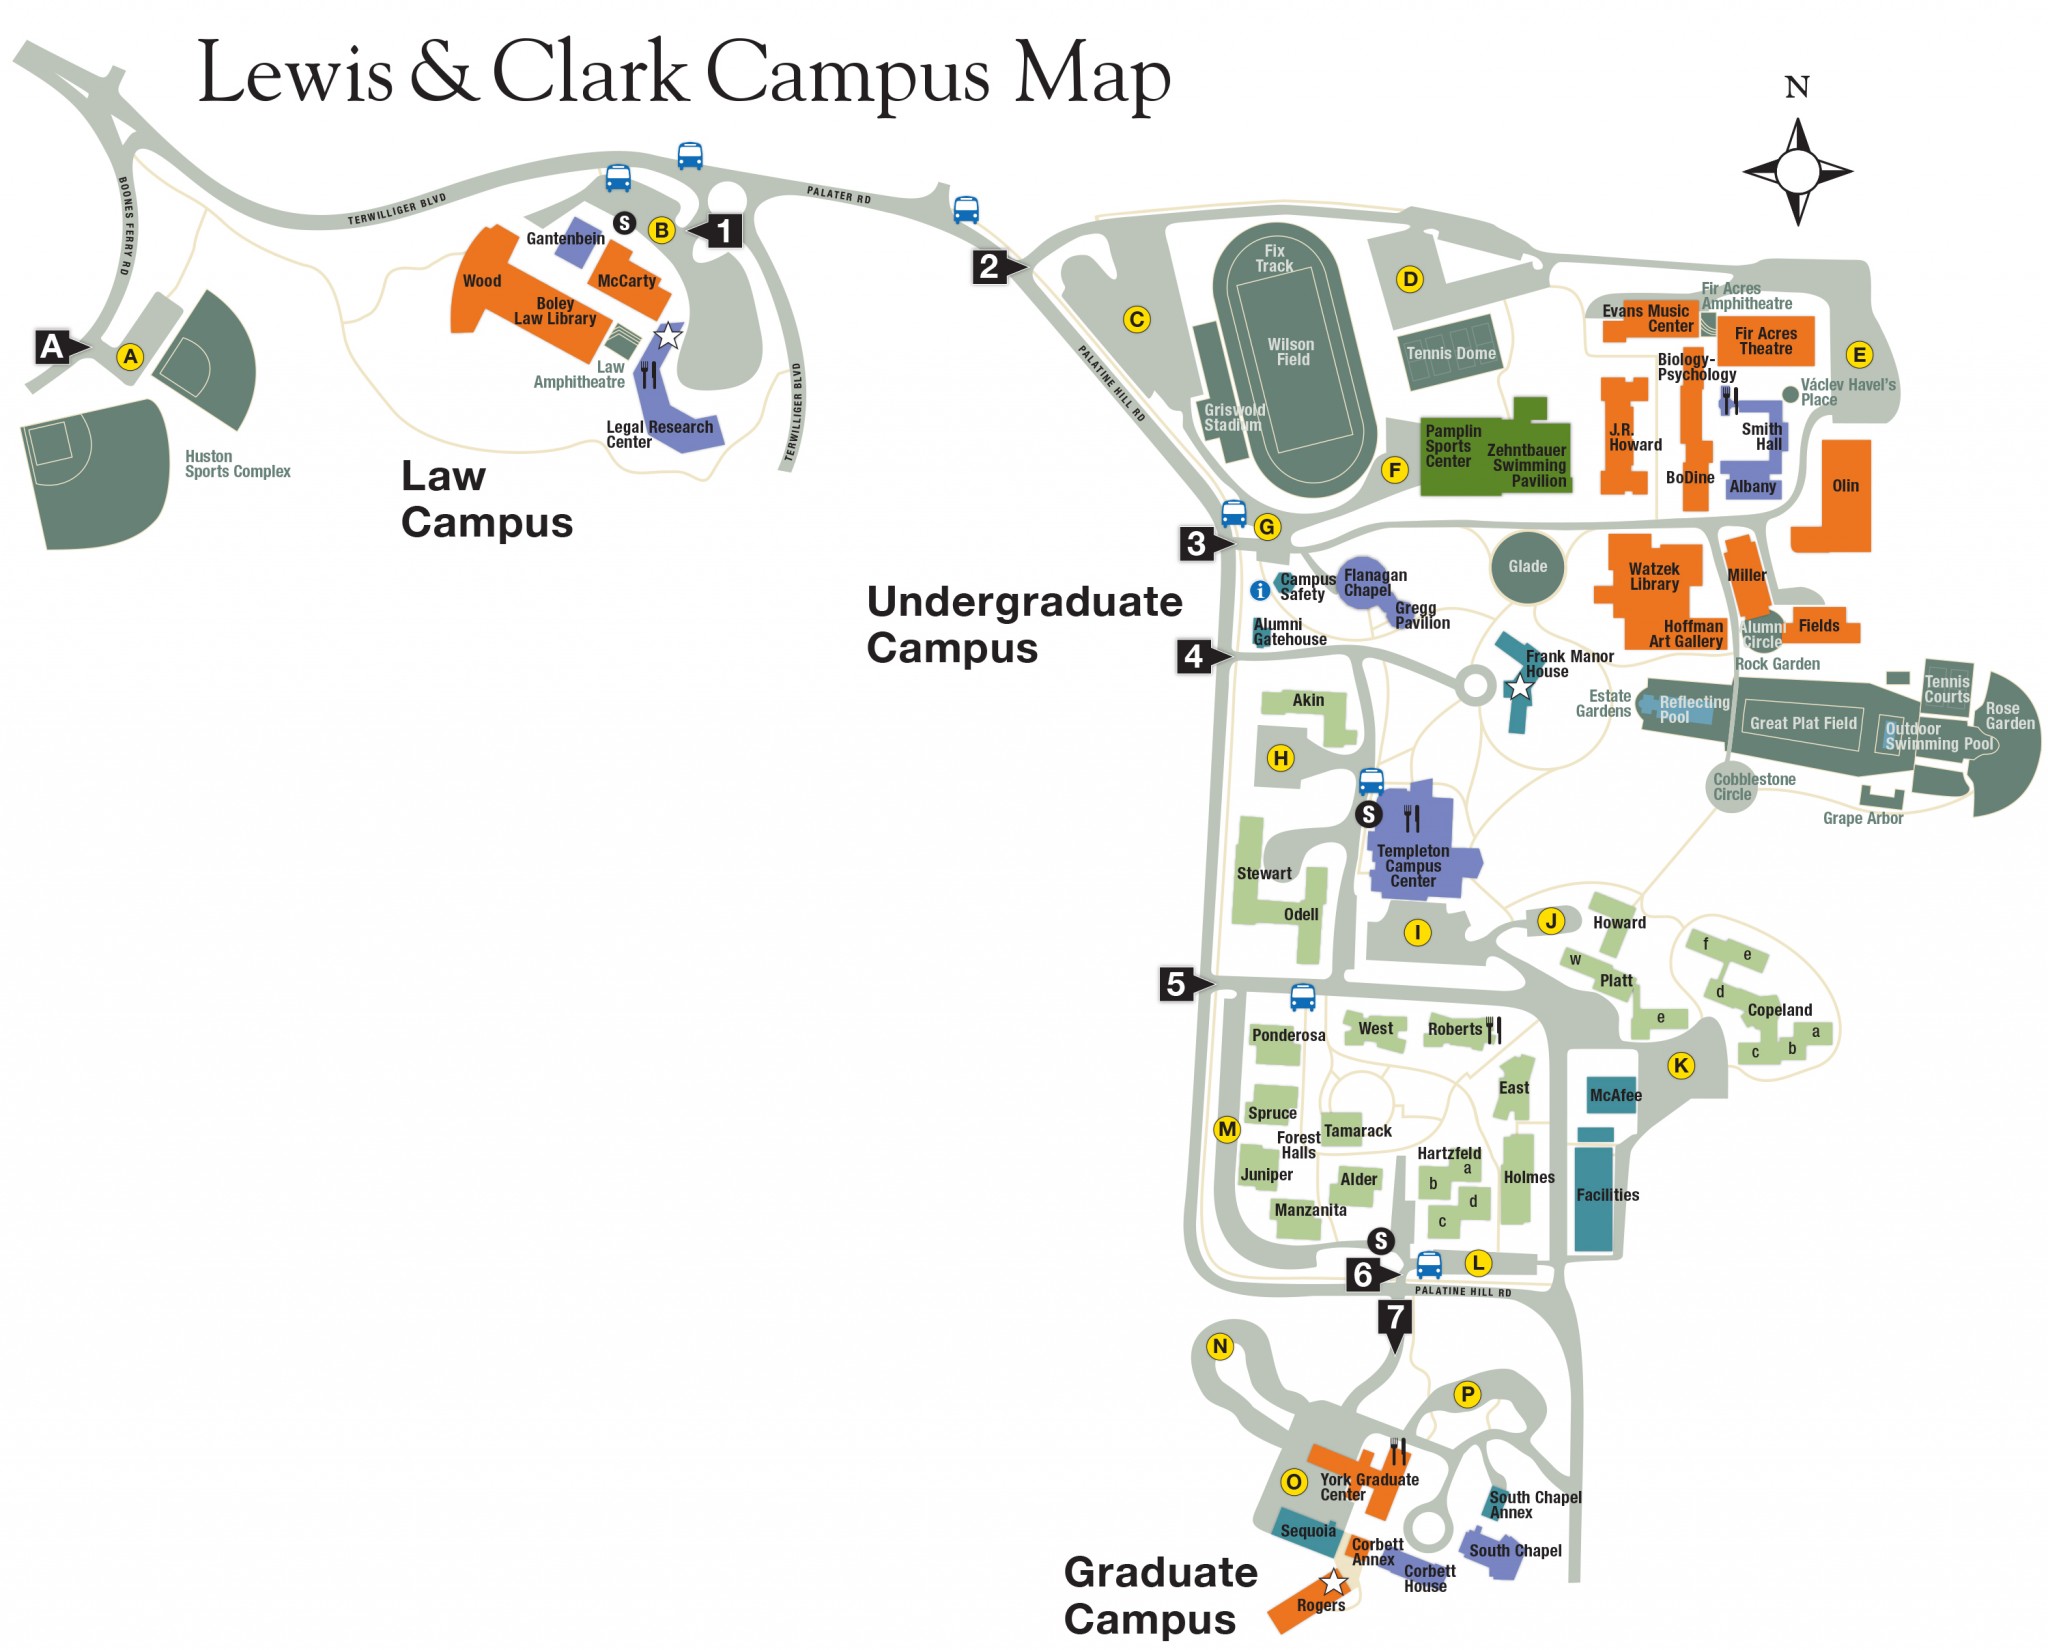 Visiting Campus - Lewis & Clark